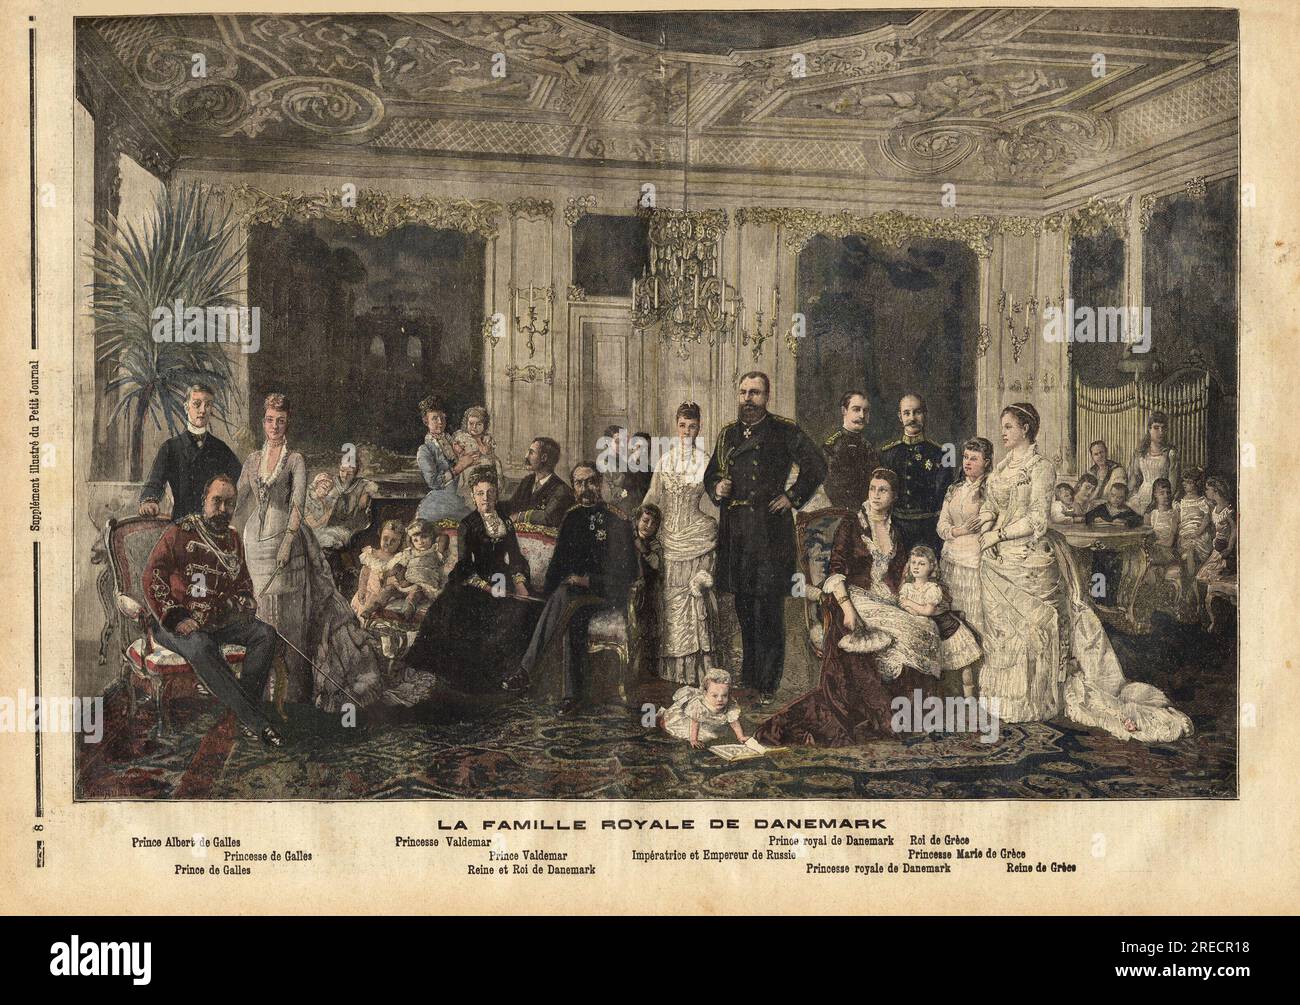 La famille royale du Danemark, avec assis au centre, la reine Louise de Hesse-Kassel (1817-1898) et le roi Christian IX de Danemark (1818-1906) surnomme 'le beau pere de l'europe' car il marie plusieurs de ses enfants a des heritiers des grandes familles royales, comme il est represente ici entoure de ses enfants lors de la Celebration des noces d'argent de sa fille avec le tsar de Russie: derriere lui, la princesse Marie d'Orleans (1865-1909) et son epoux le Prince Valdemar (1858-1939), et a droite, assis, Albert Edouard Prince de Galles (1841-1910, futur Edouard VII du Royaume uni) av Foto Stock